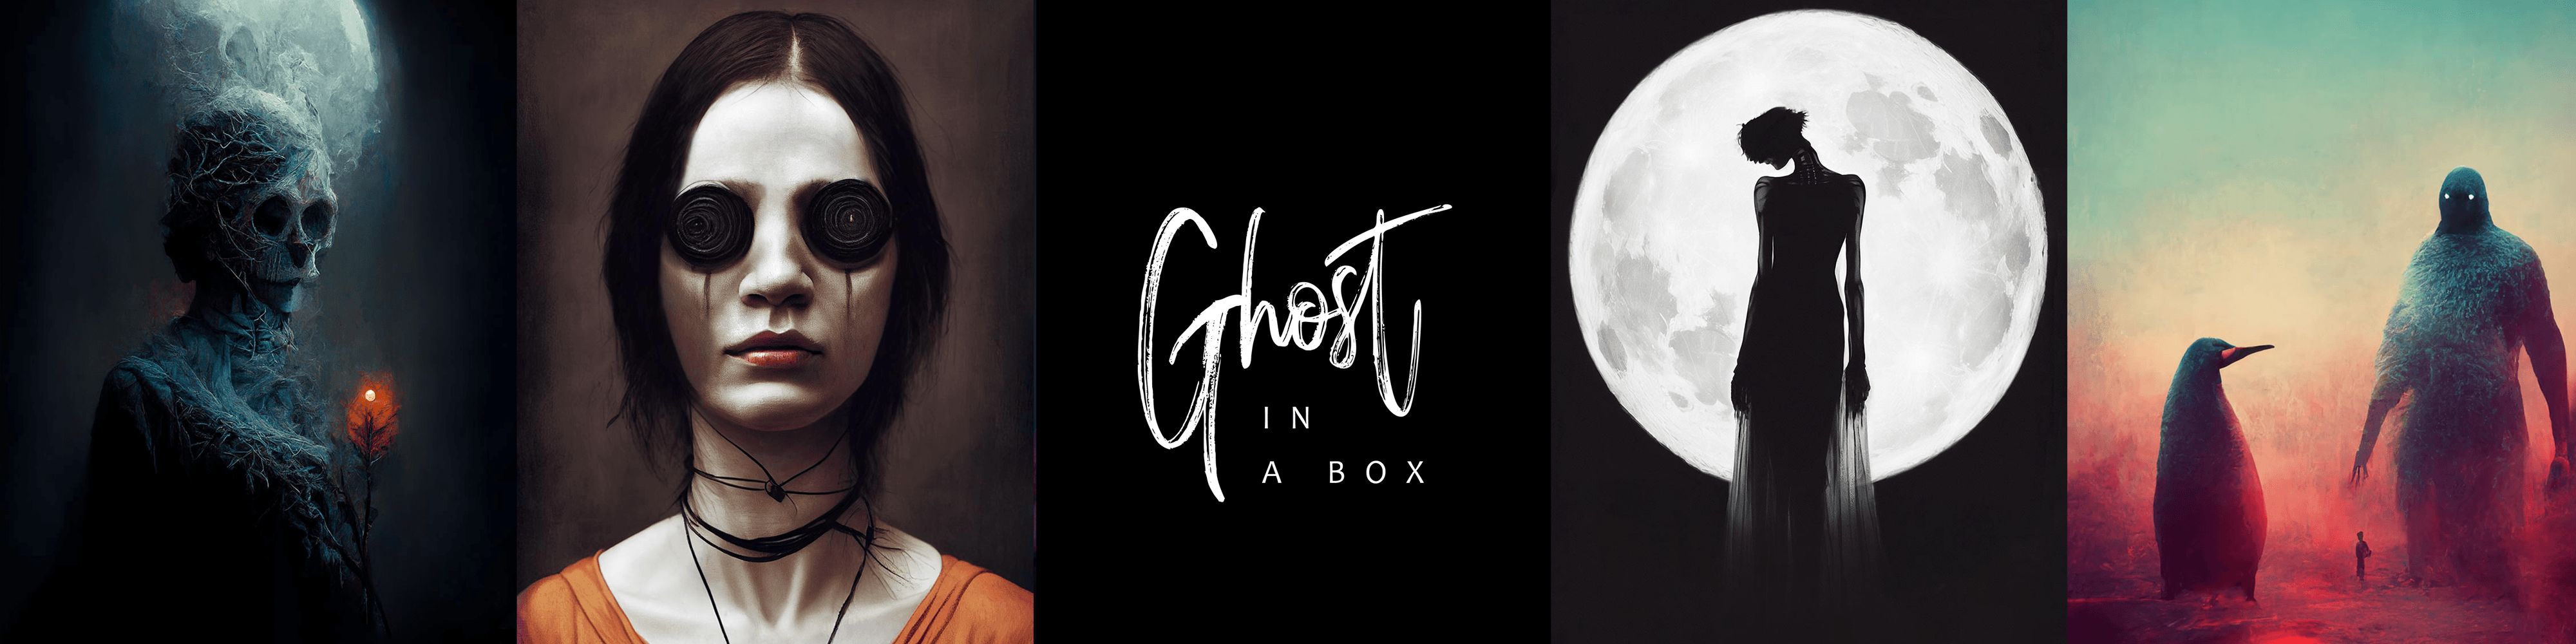 GhostInABox banner